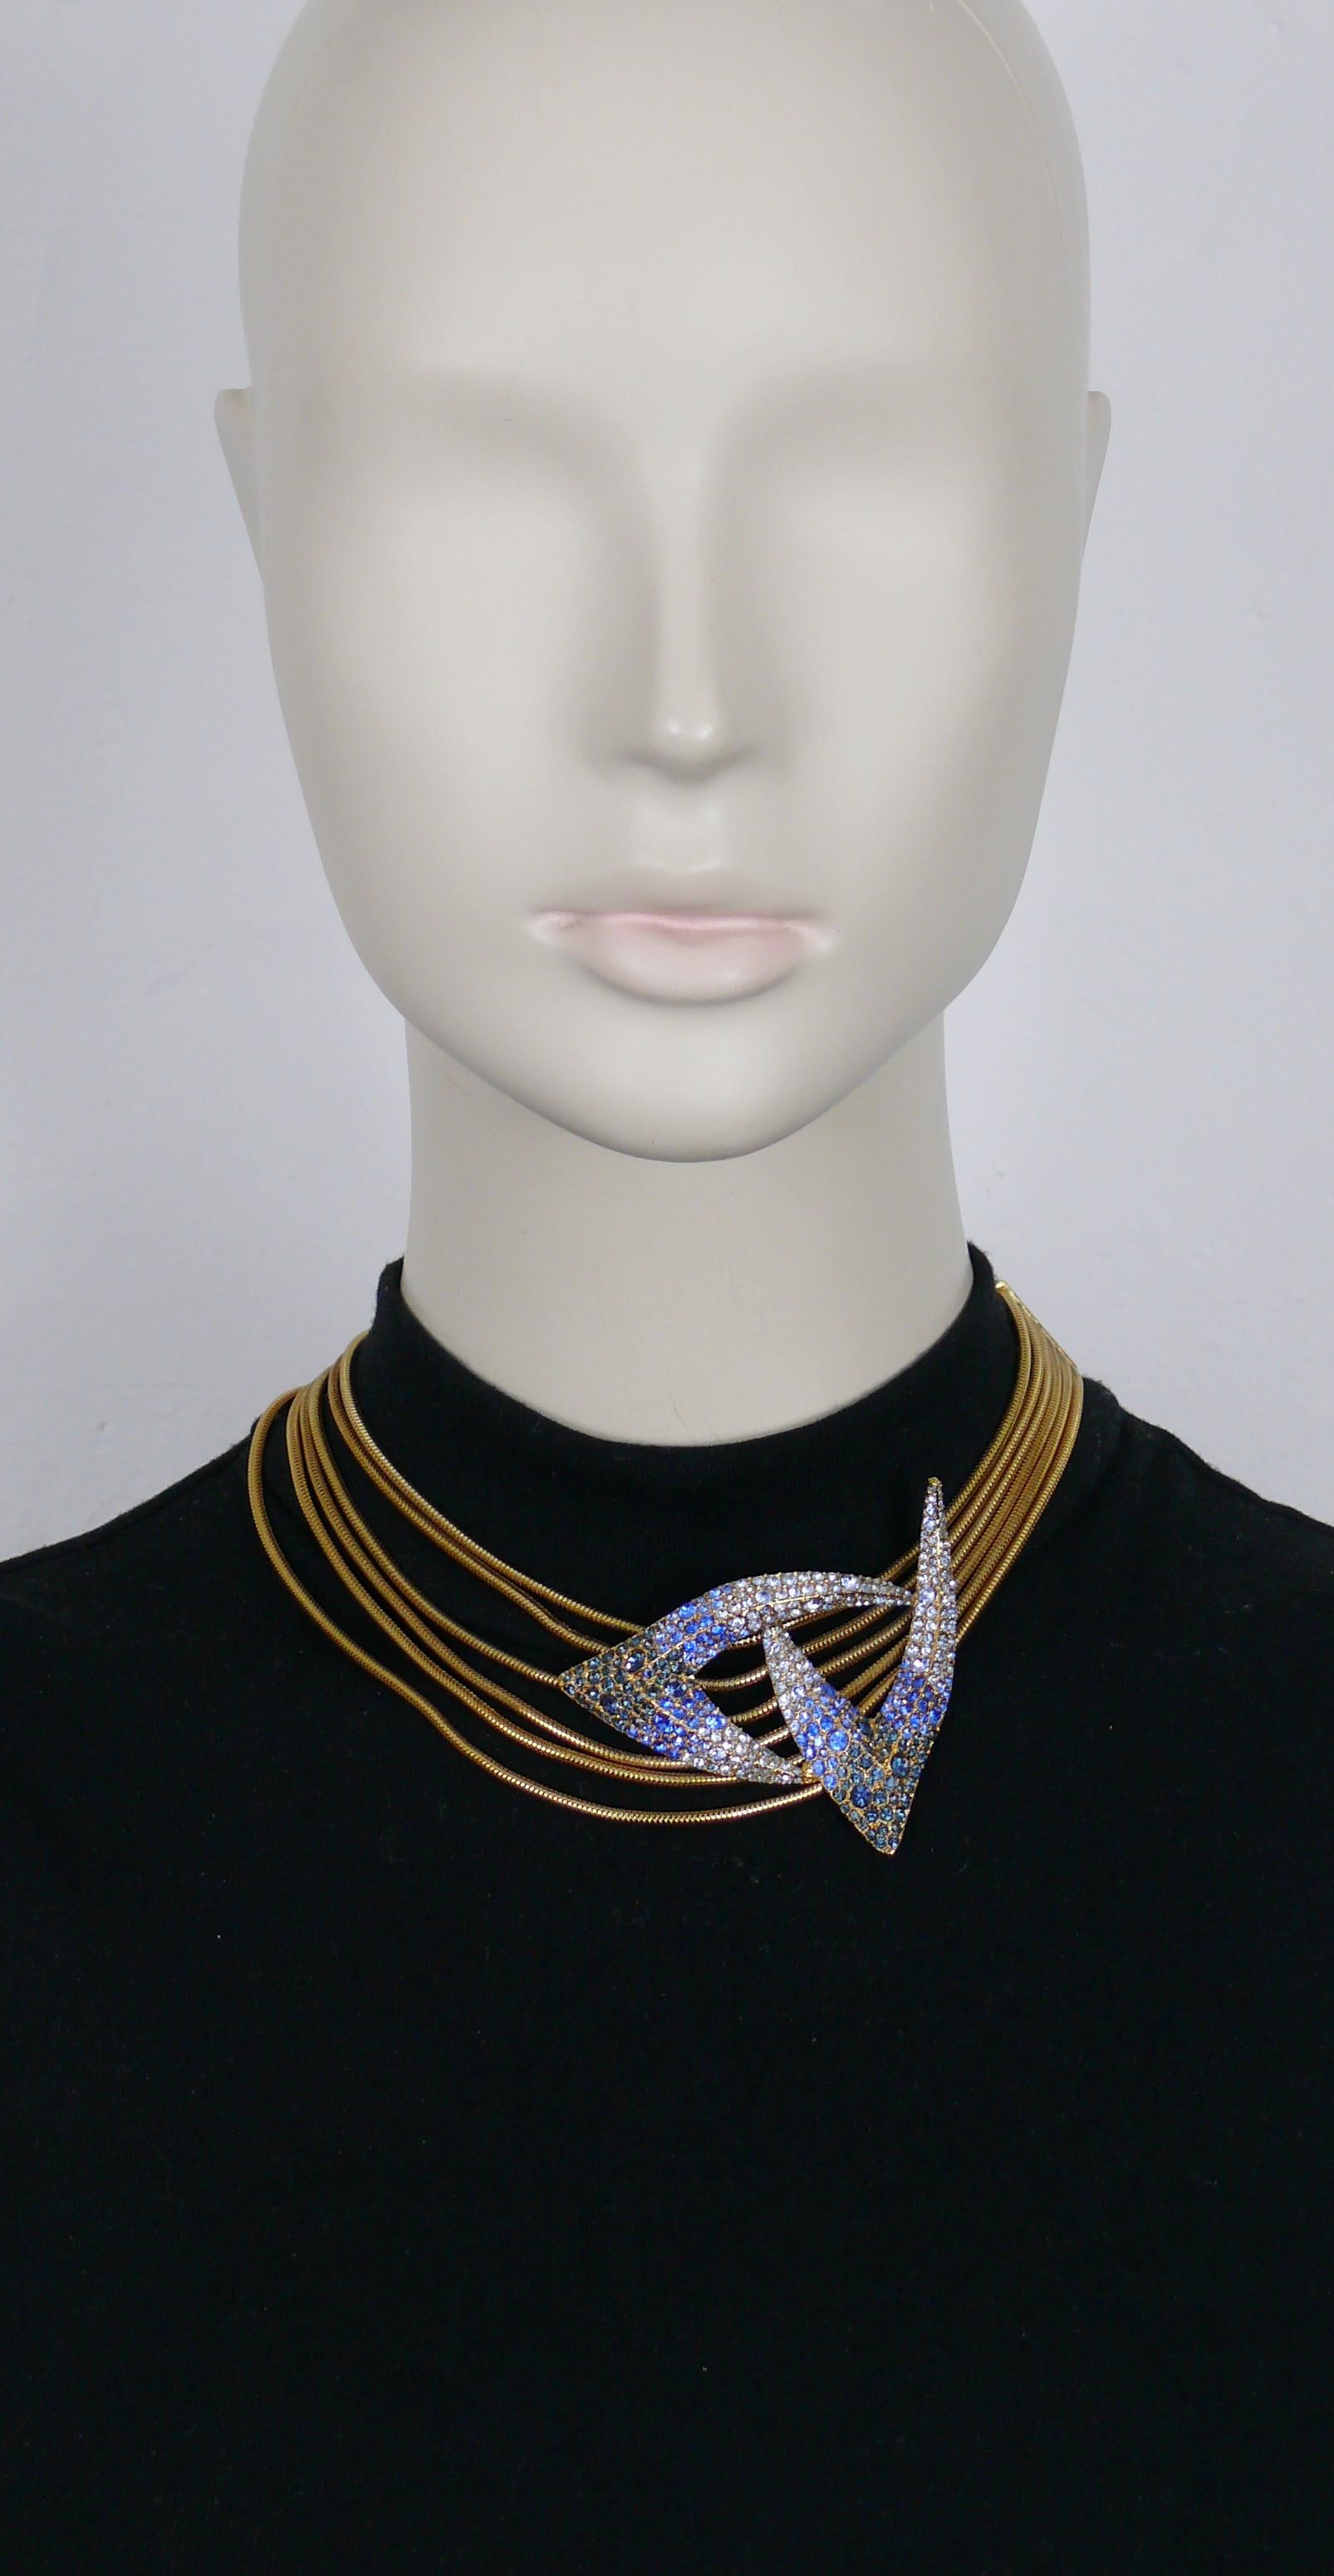 THIERRY MUGLER Vintage Halskette mit goldfarbener Schlangenkette und blauem Kristall in der Mitte.

Verstellbarer Hakenverschluss.

Geprägtes THIERRY MUGLER.

Ungefähre Maße: Länge von ca. 35 cm (13,78 Zoll) bis ca. 39,5 cm (15,55 Zoll).

MATERIAL :